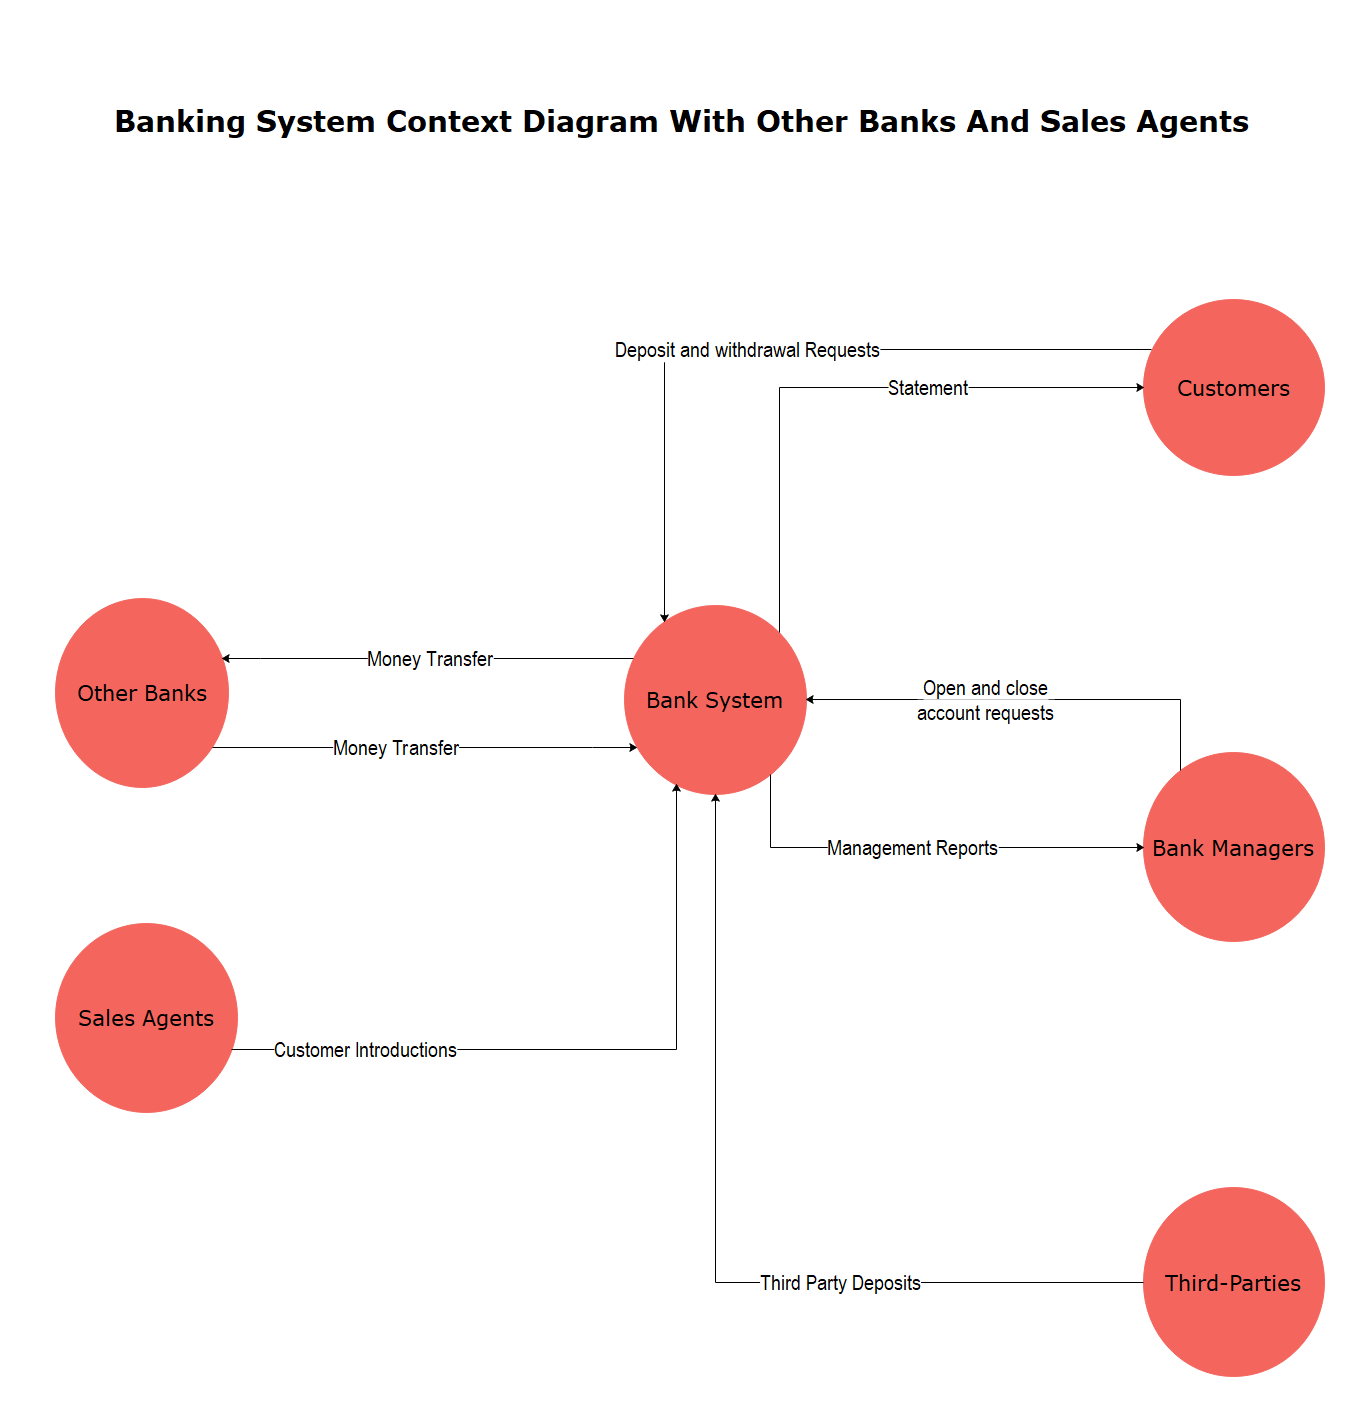 Diagrama de contexto del sistema bancario con otros bancos y agentes de ventas